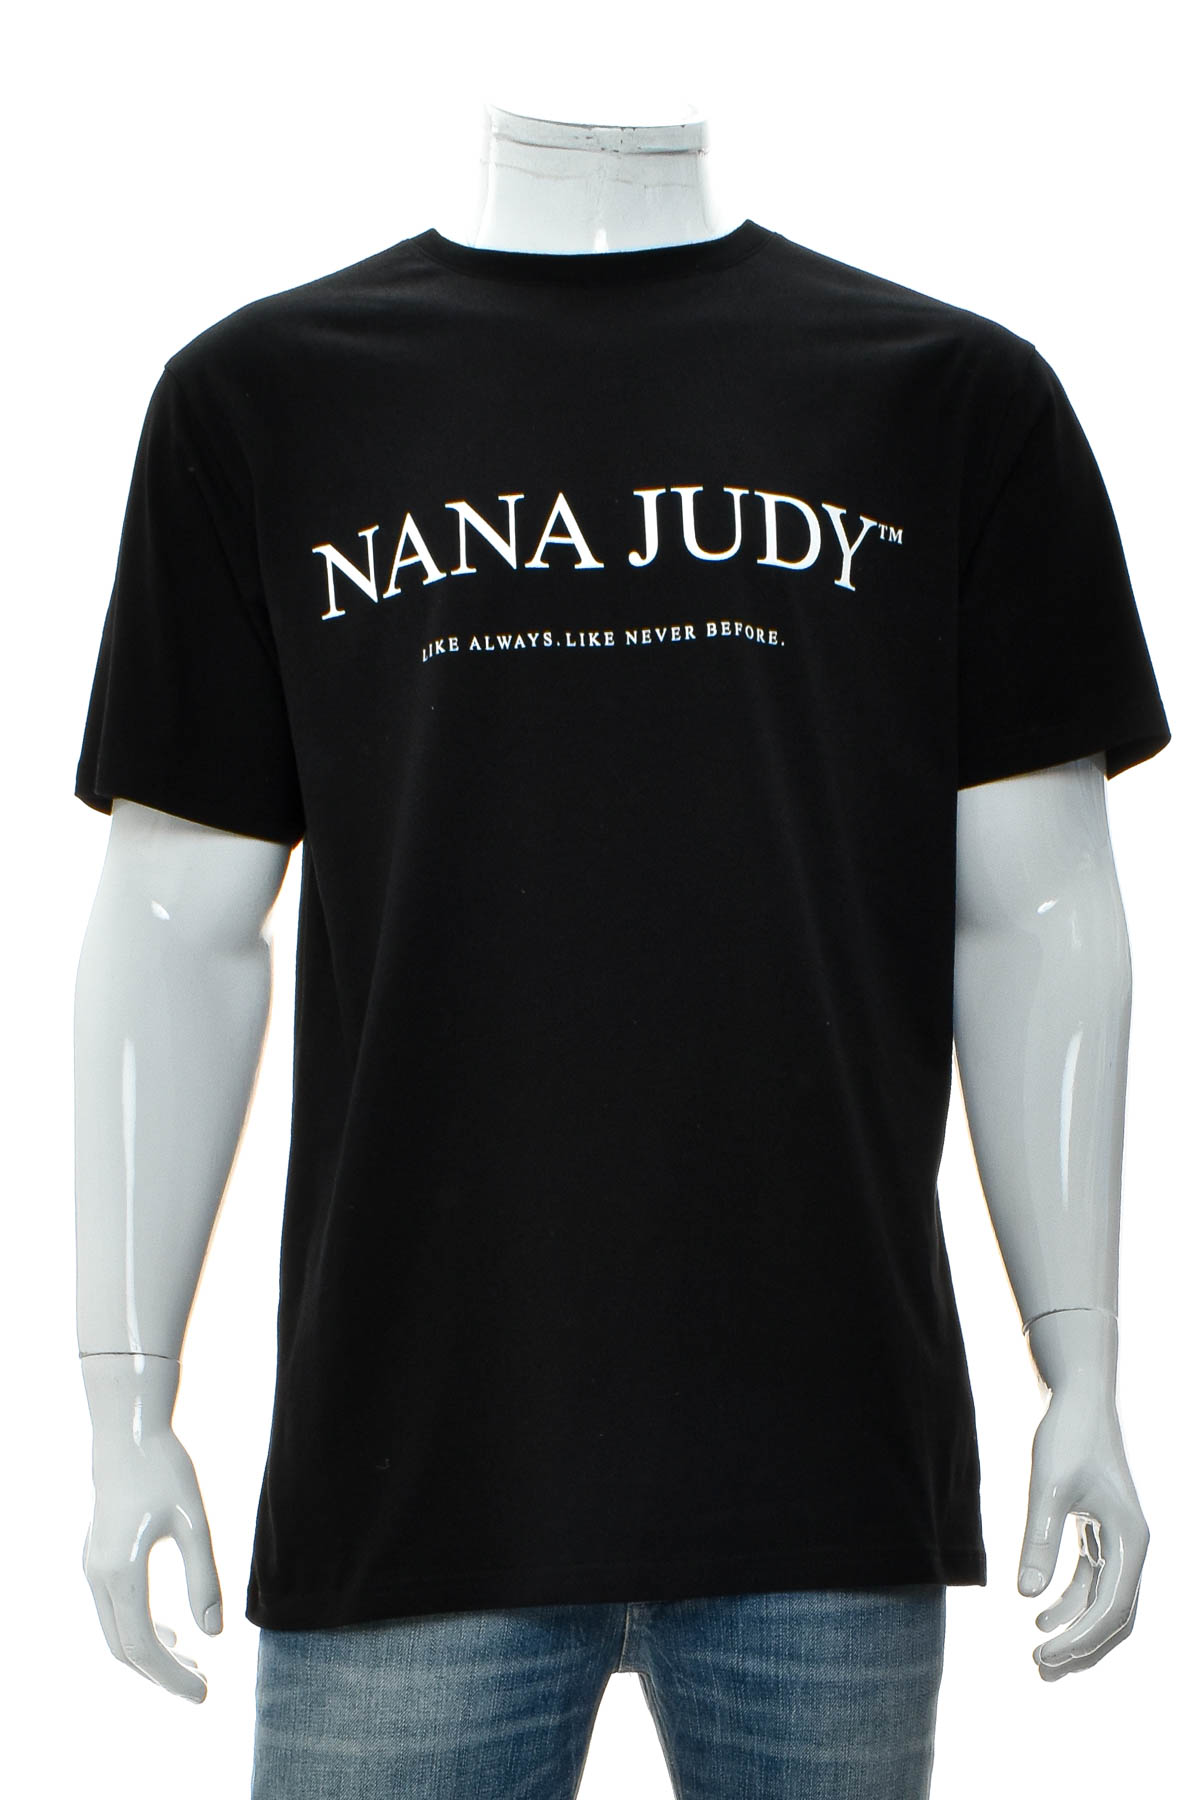 Αντρική μπλούζα - Nana Judy - 0